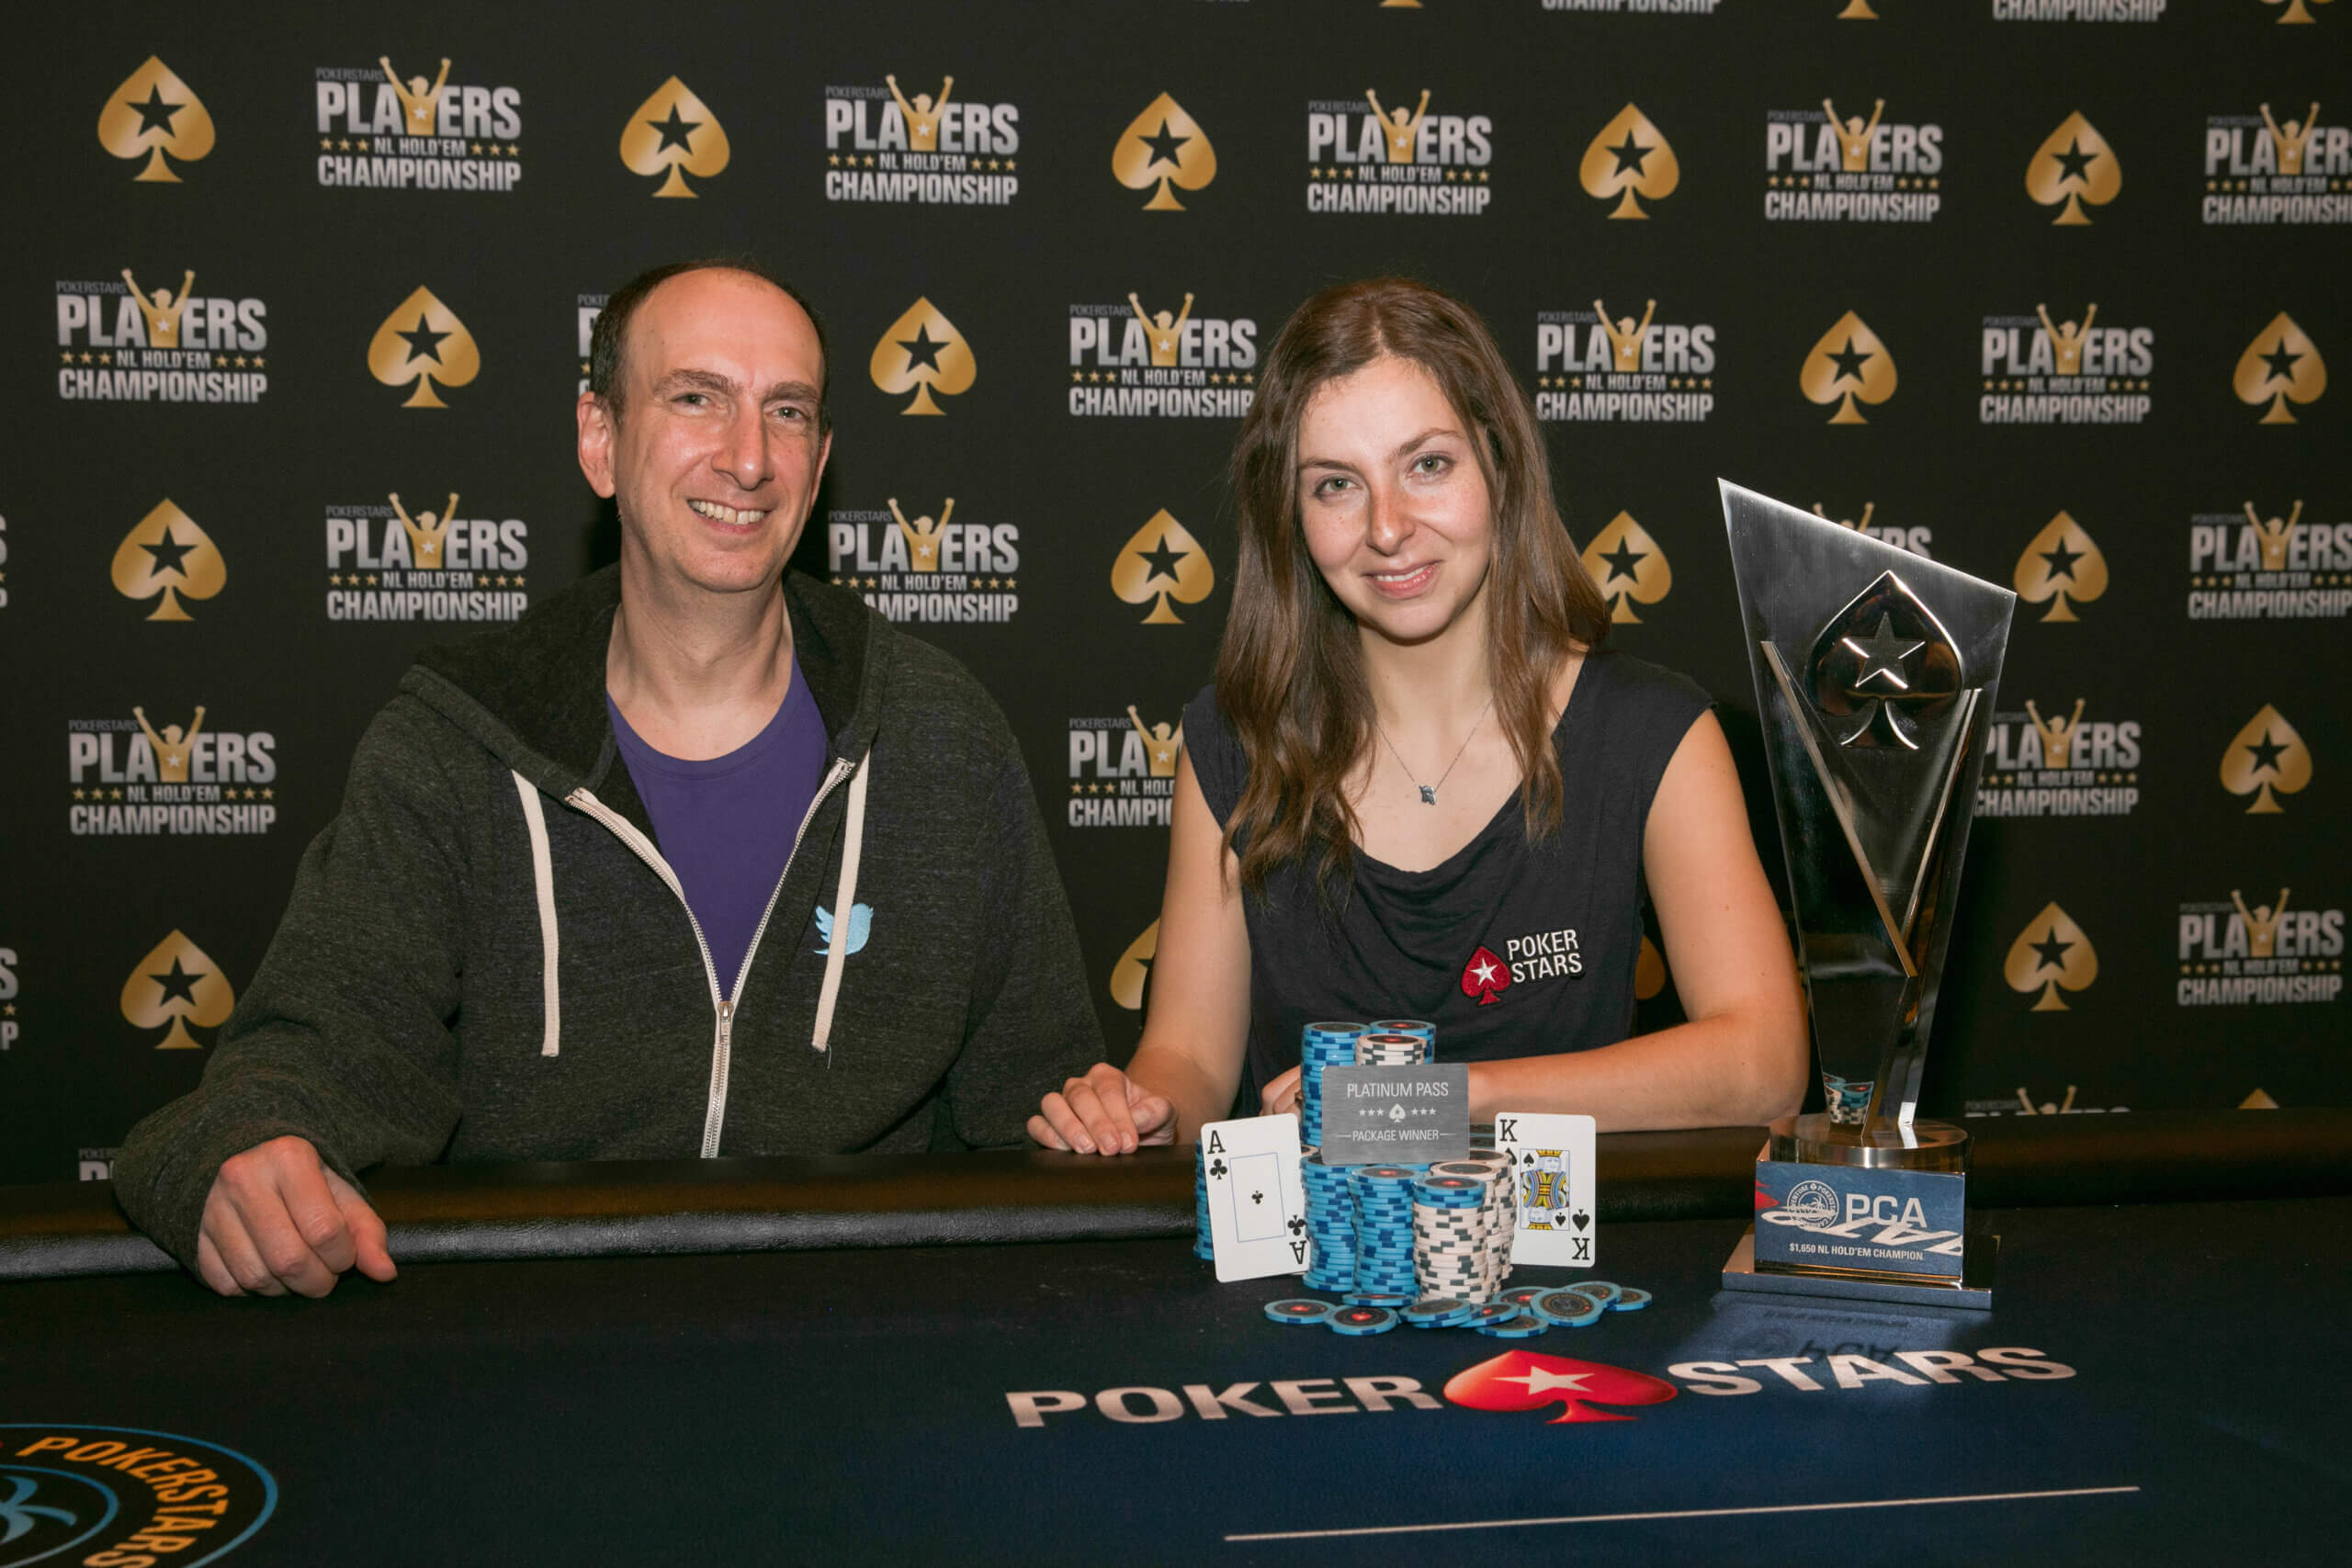 Doug Polk makes fun of Maria Konnikova being called a “Top Poker Player”